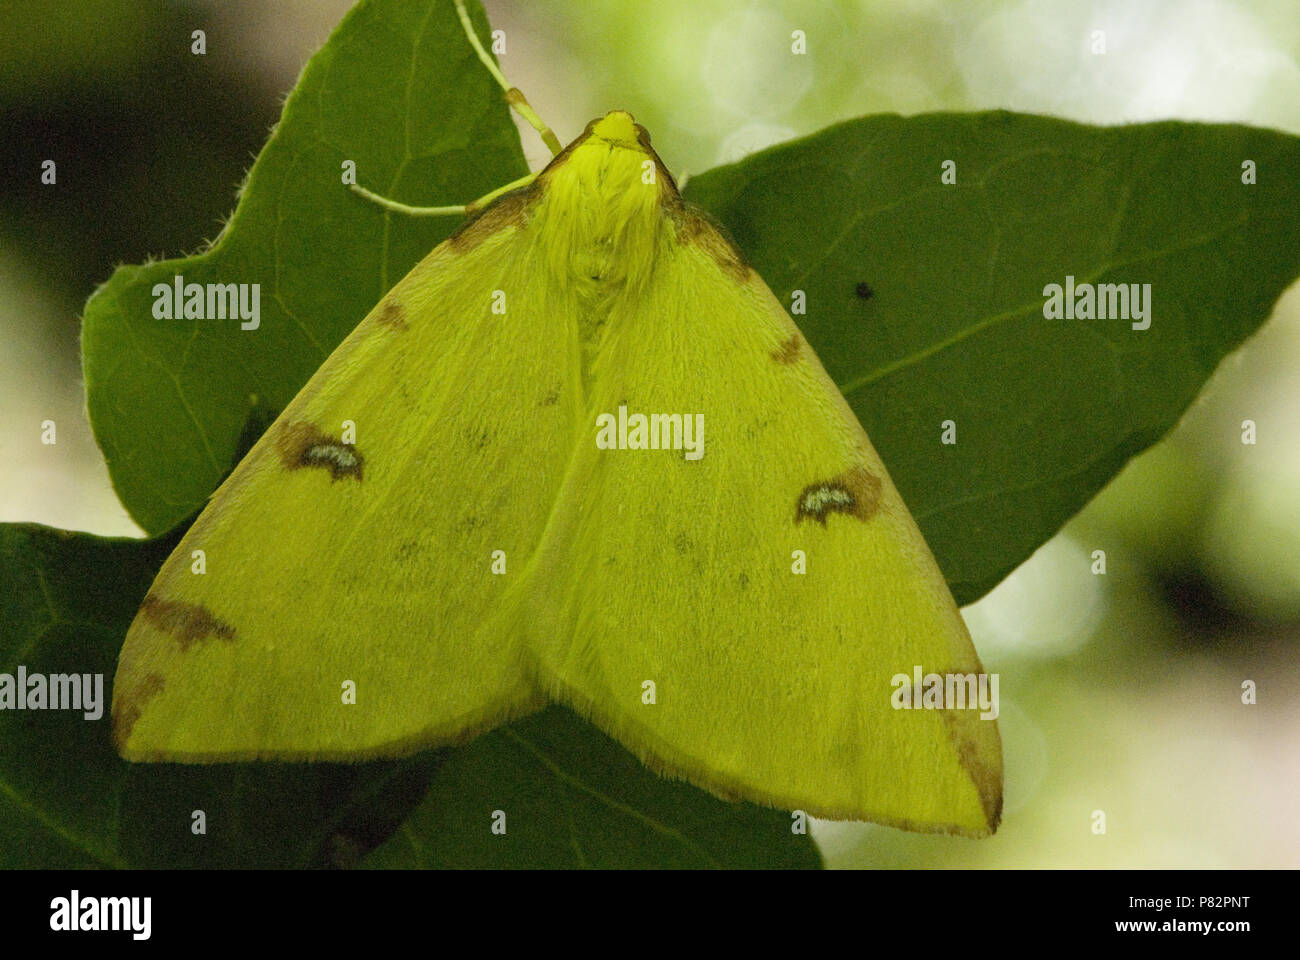 Brimstone moth on leaf Luxemburg, Hagedoornvlinder op blad Luxemburg Stock Photo